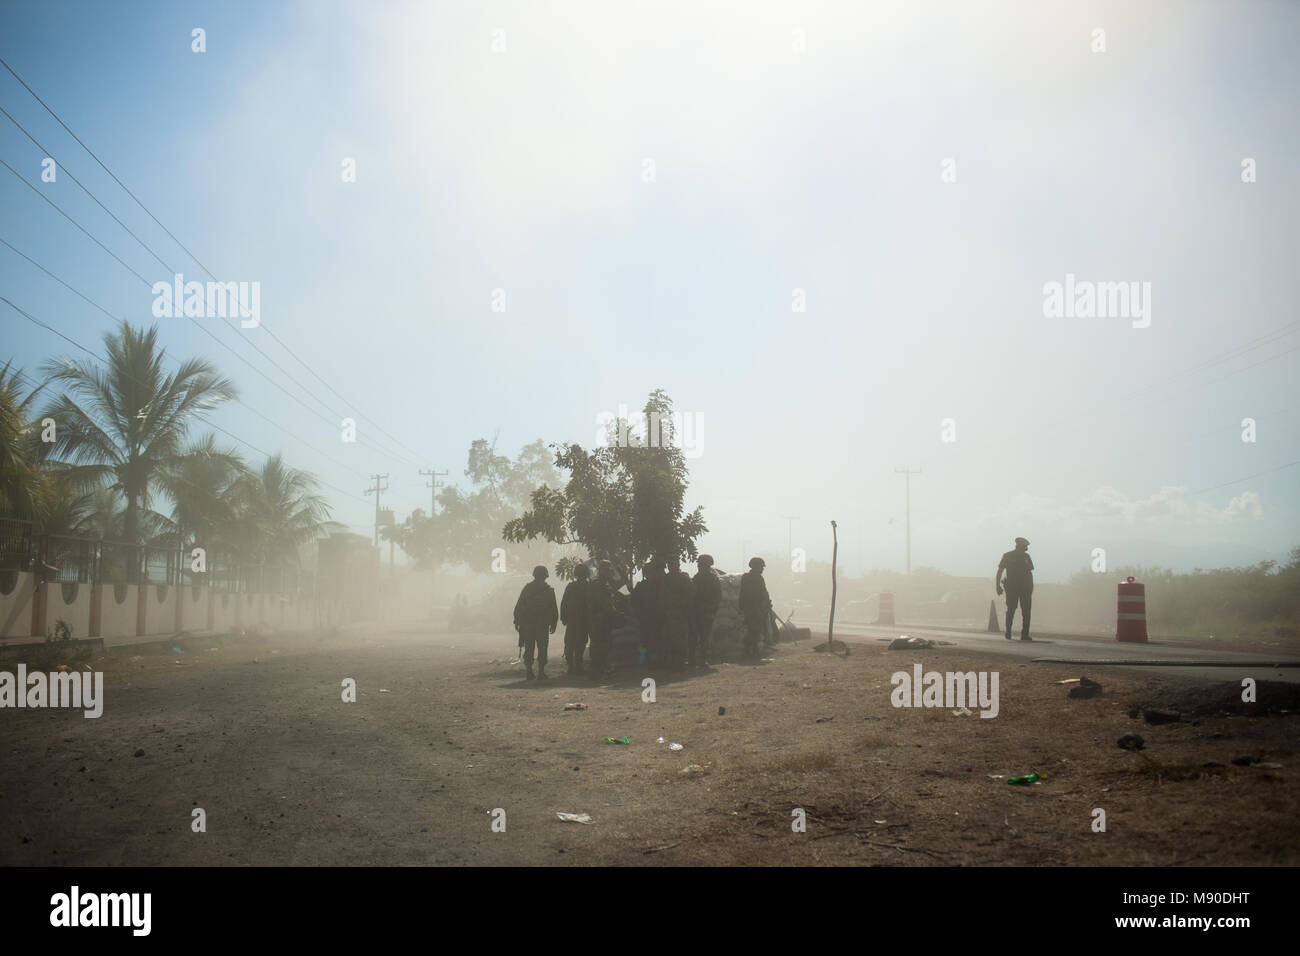 Soldados del ejército mexicano Hipólito guardia Mora en el rancho de La Ruana, Michoacán‡n, México el 17 de diciembre de 2014. Este fue el sitio de un enfrentamiento entre la mora del grupo de vigilantes y sus rivales de grupo H3. El conflicto dejó 11 personas muertas. Foto de stock